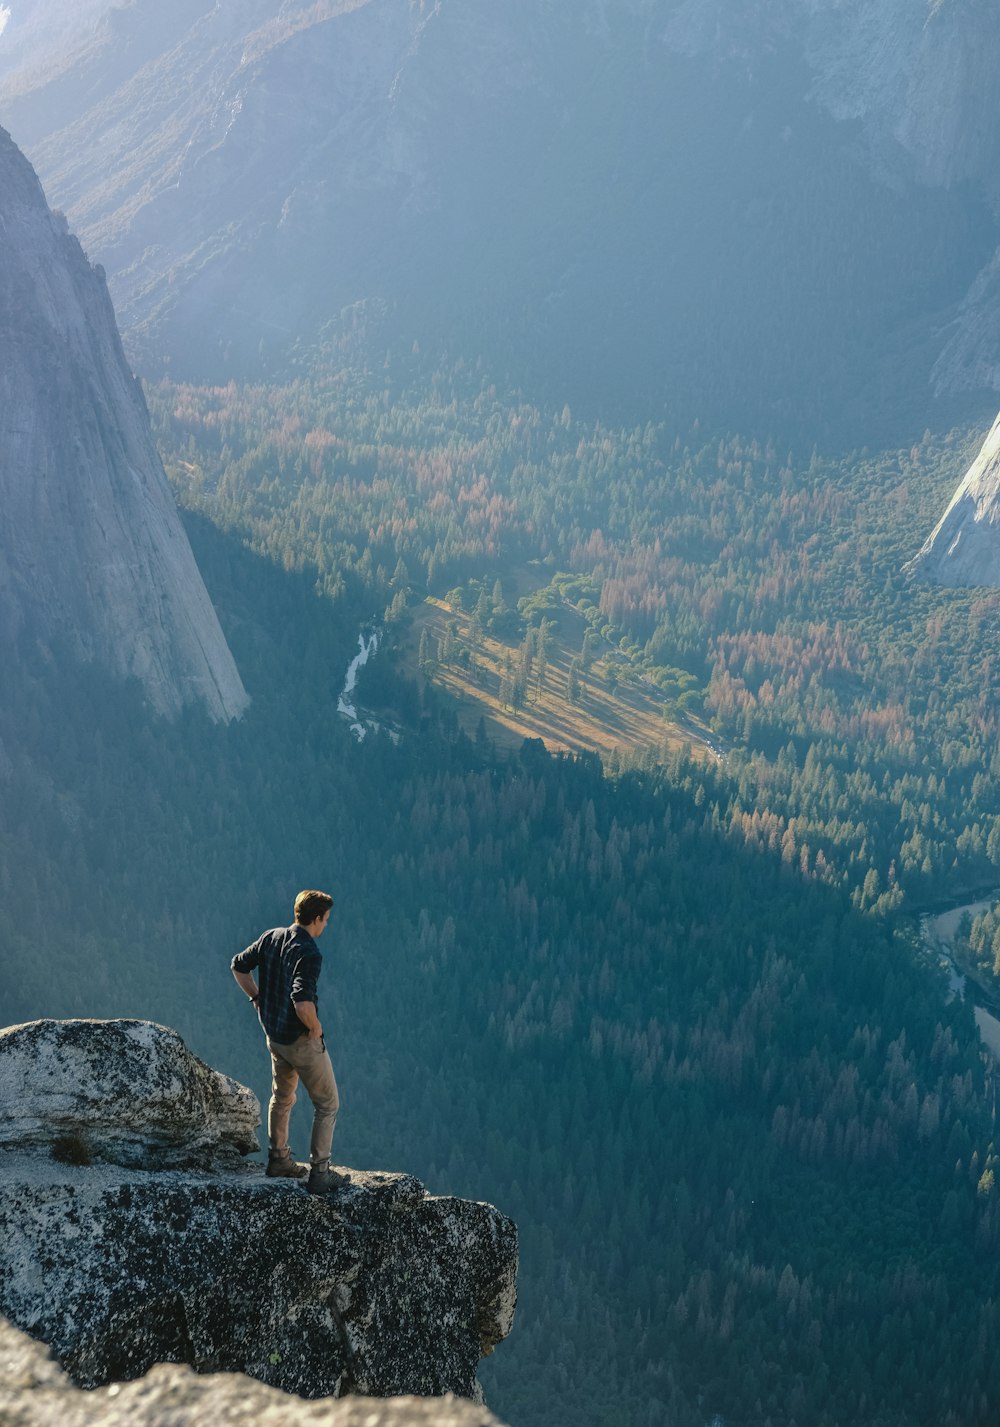 homme debout sur le rocher gris sur la falaise avec vue d’ensemble de la forêt pendant la journée